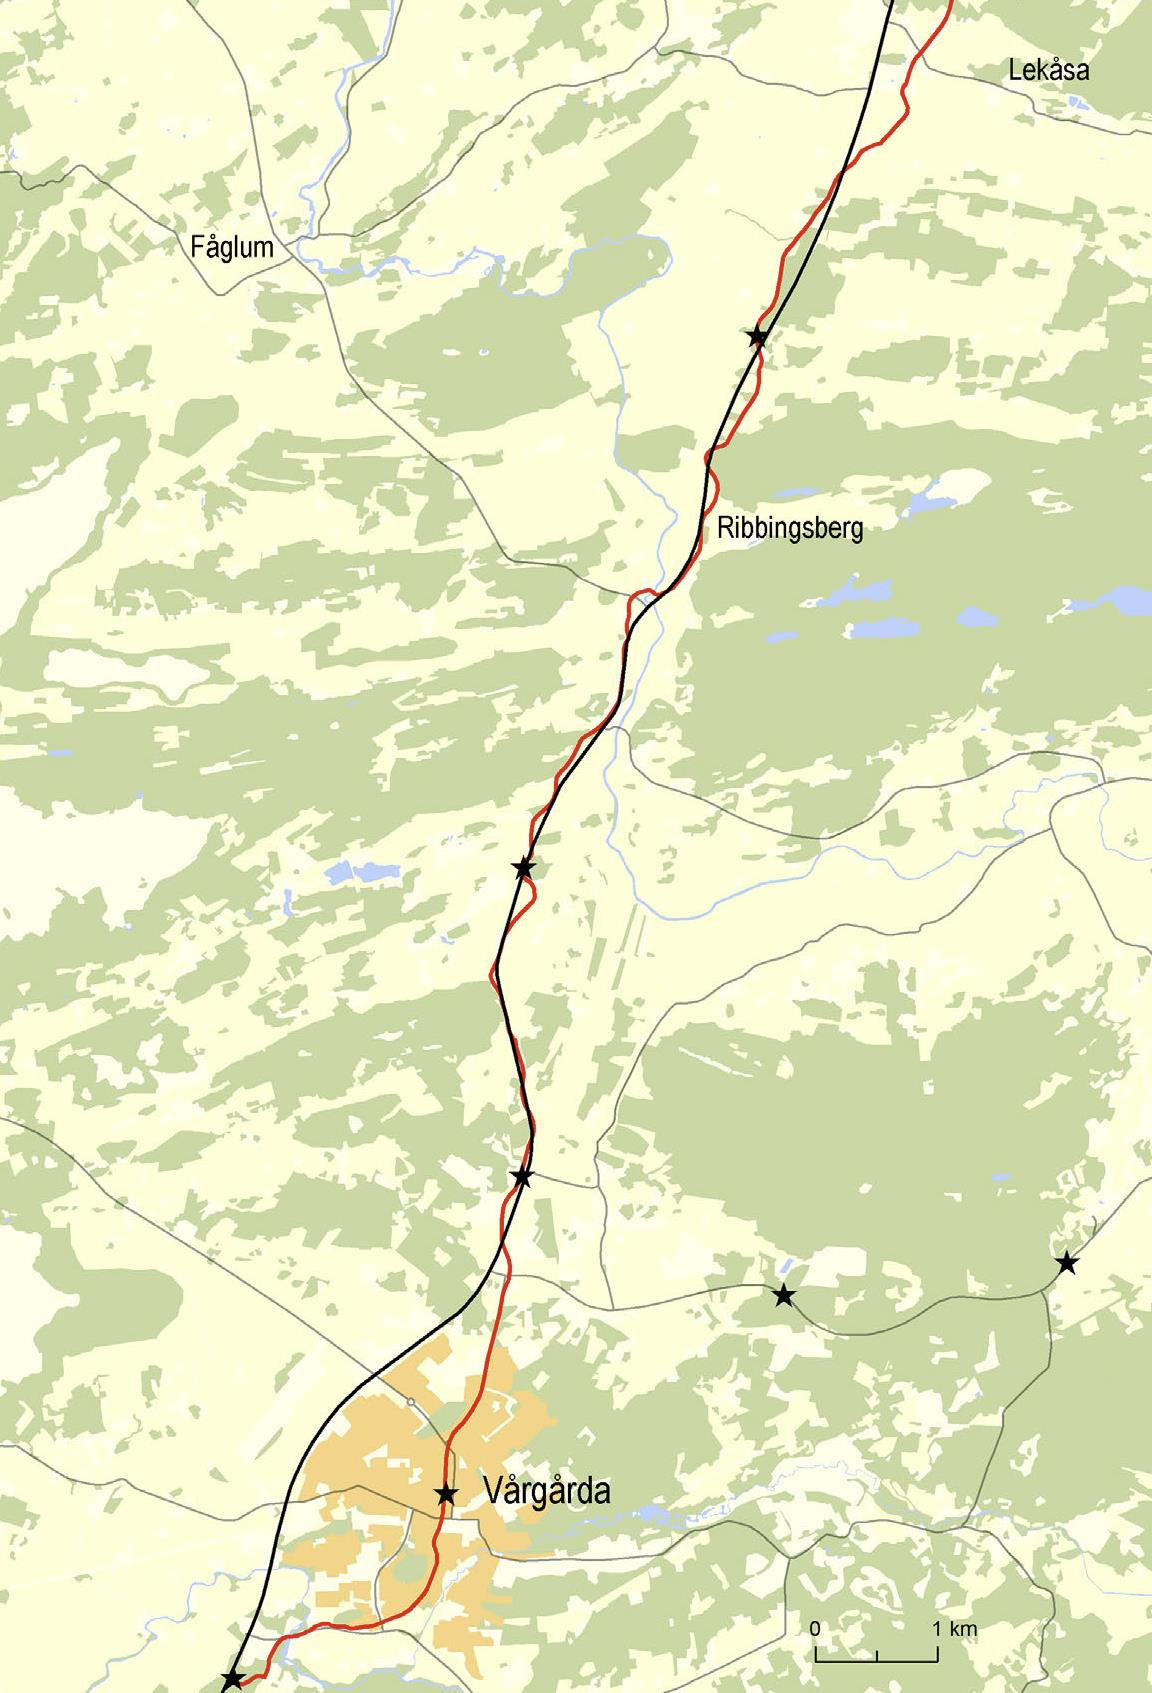 Landskapet kring Södra Härene, Fötene och Ribbingsberg är utpekade av länsstyrelsen som regionalt värdefullt odlingslandskap, med särskild hänsyn till kulturvärdena i området.